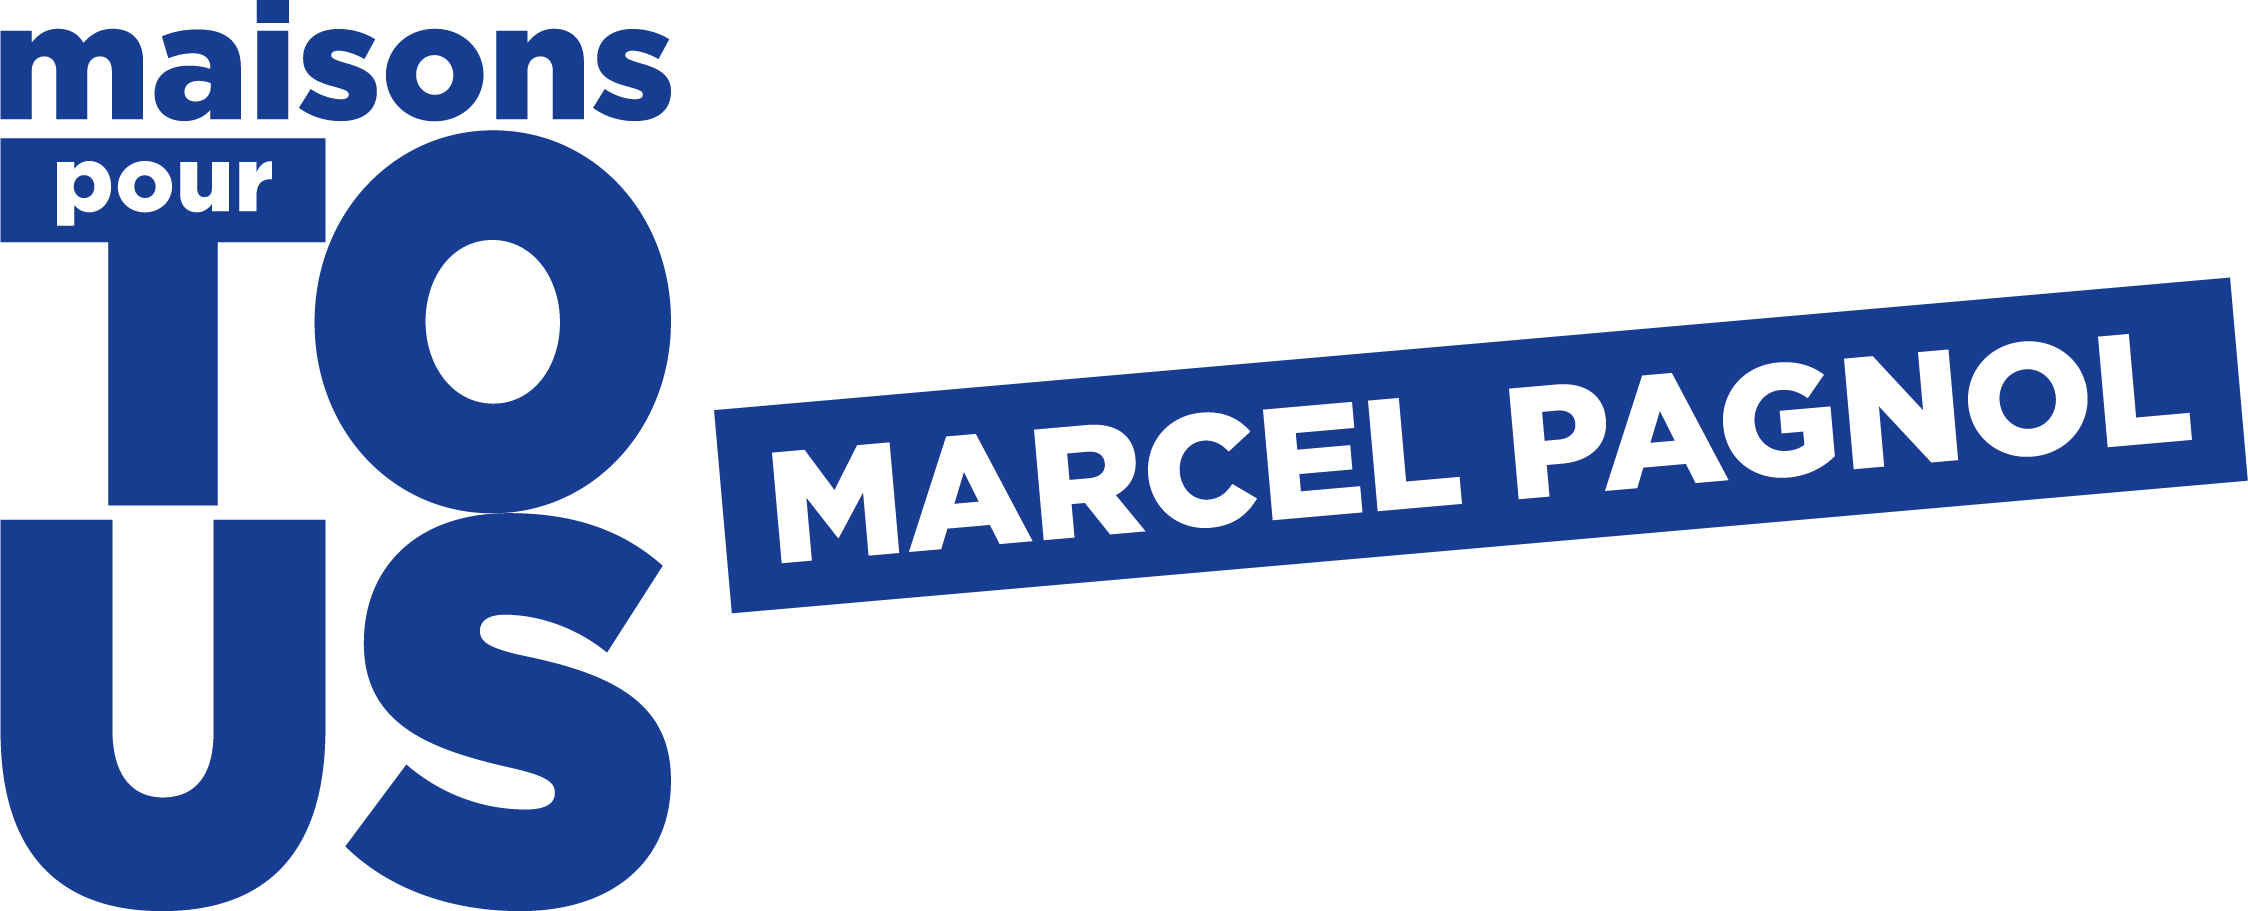 Maison pour tous Marcel Pagnol